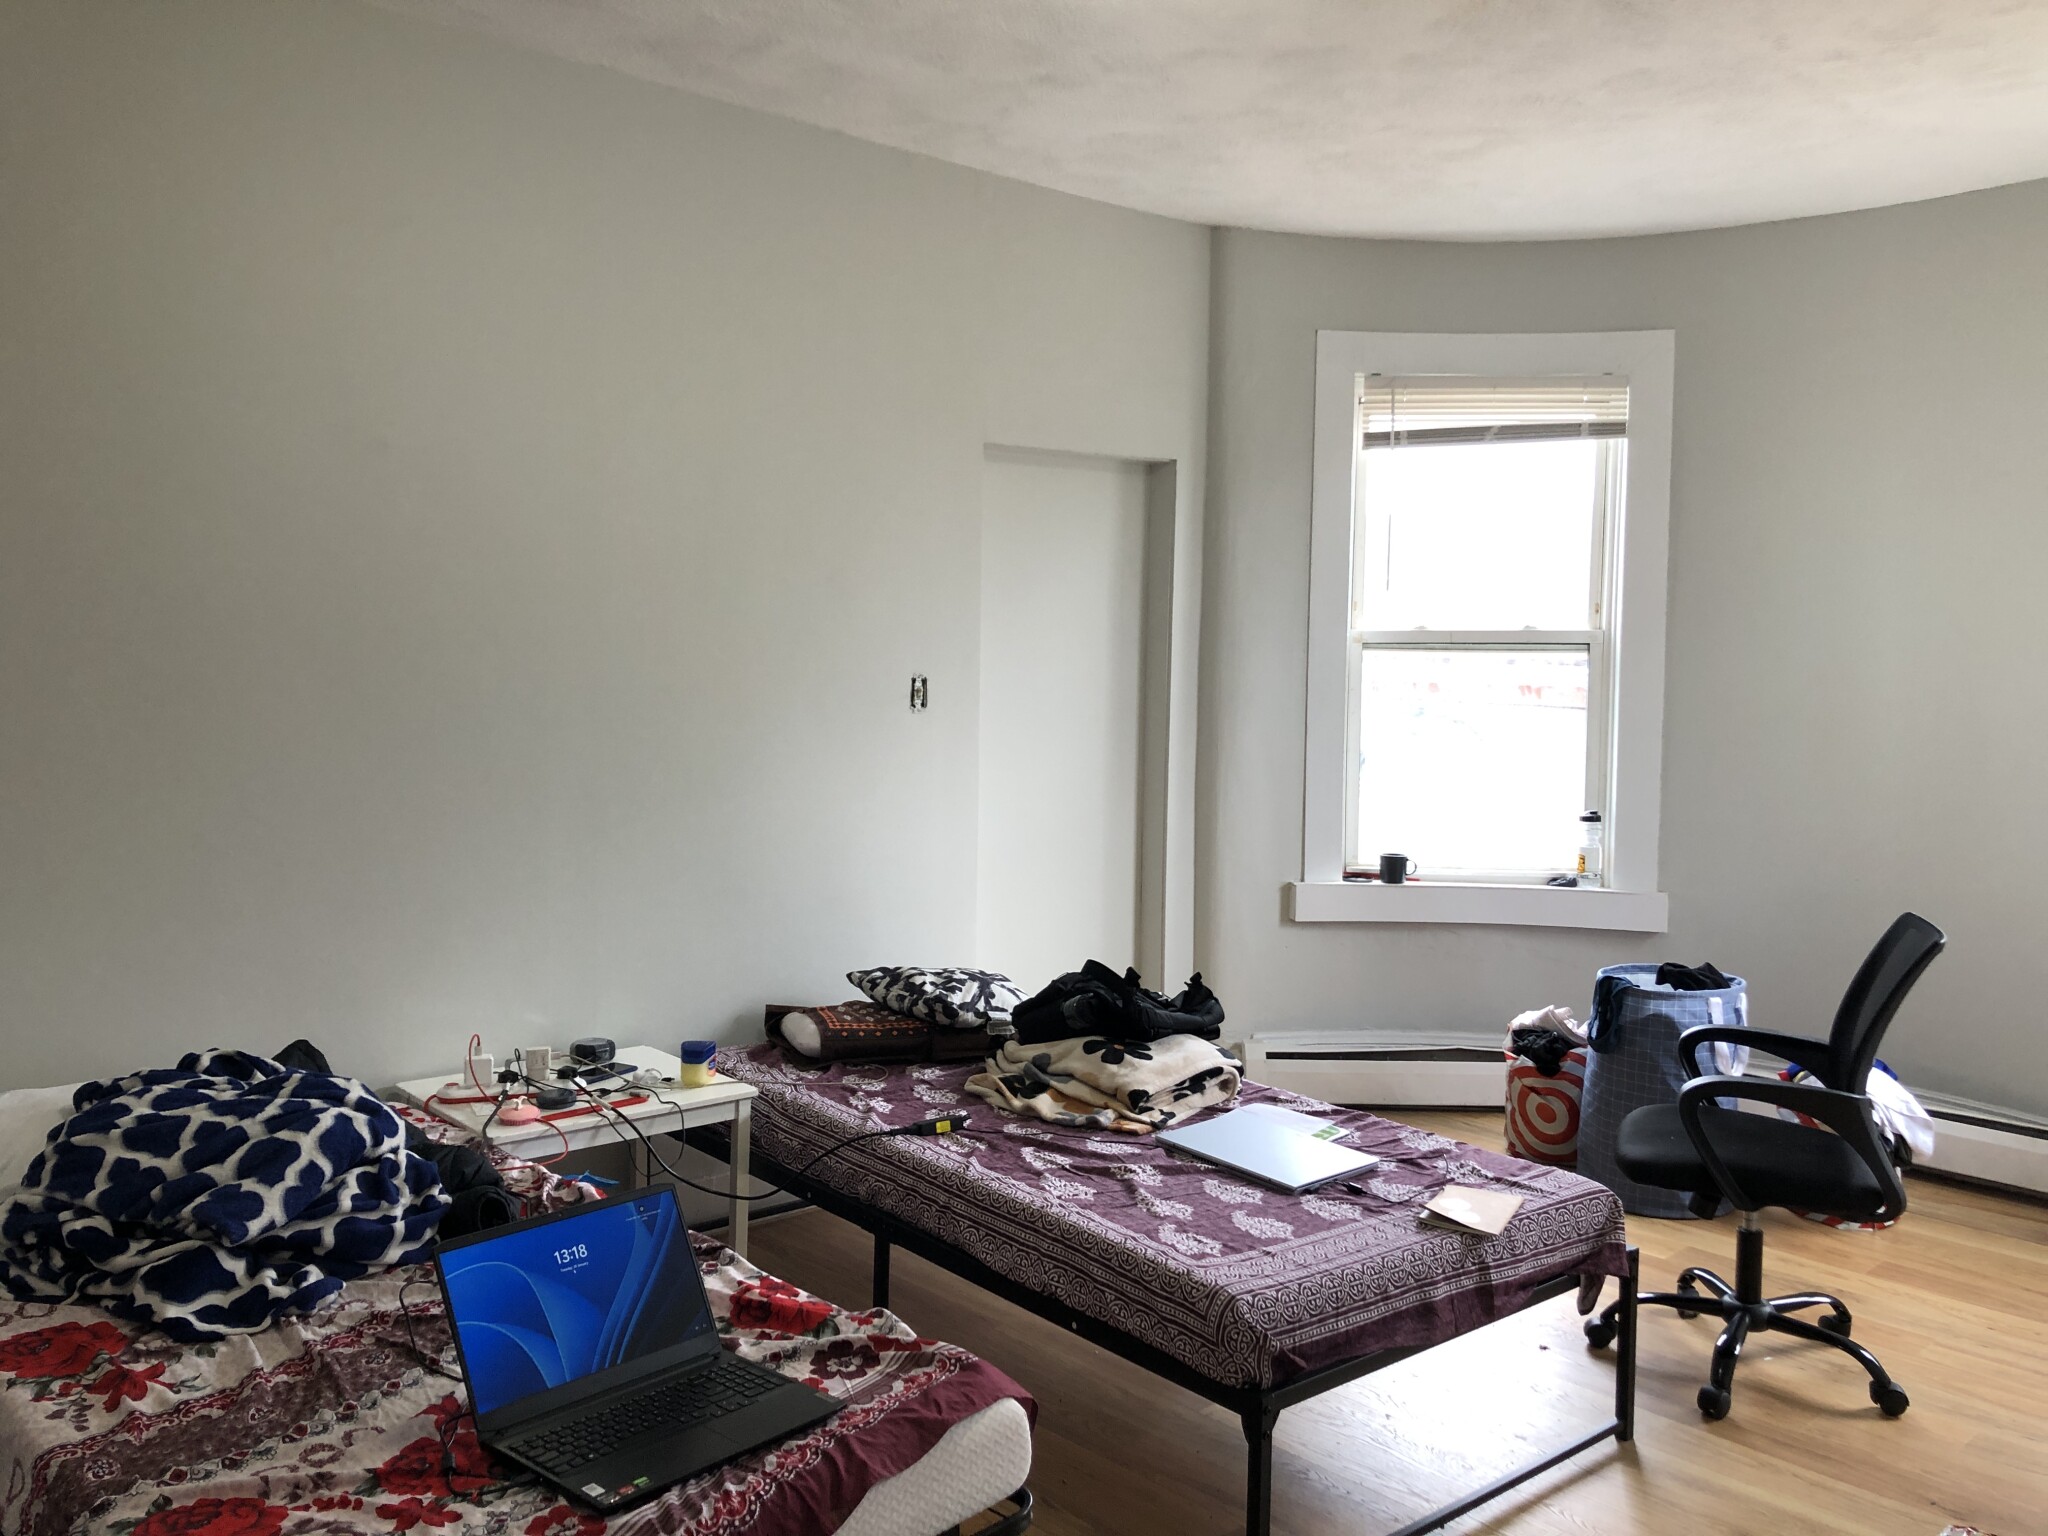 Photos of apartment on Warren,Boston MA 02119